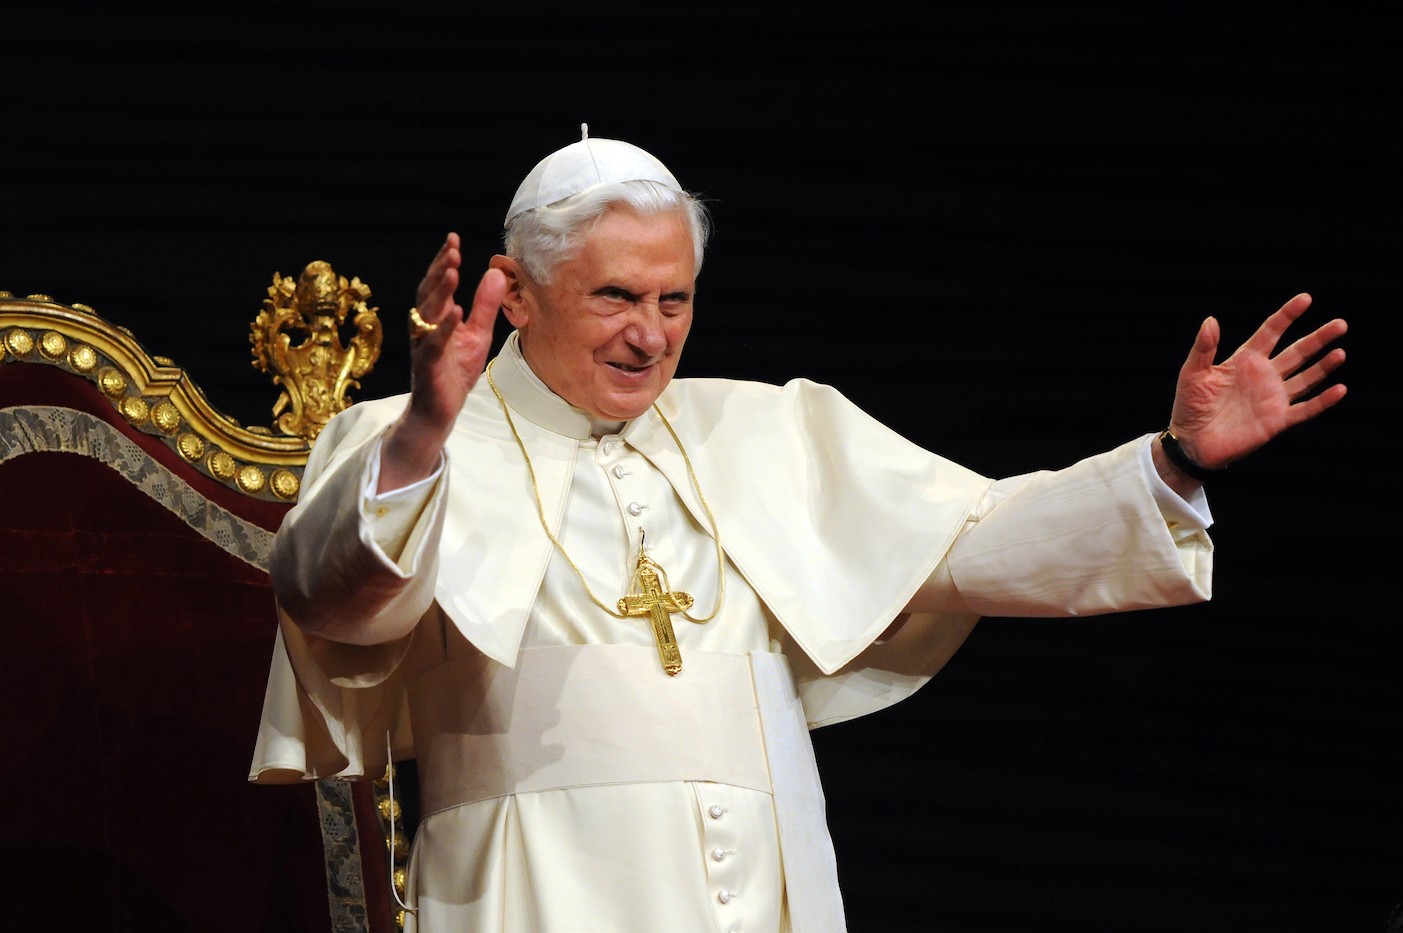 Loan báo Chúa Kitô theo Hồng y Joseph Ratzinger